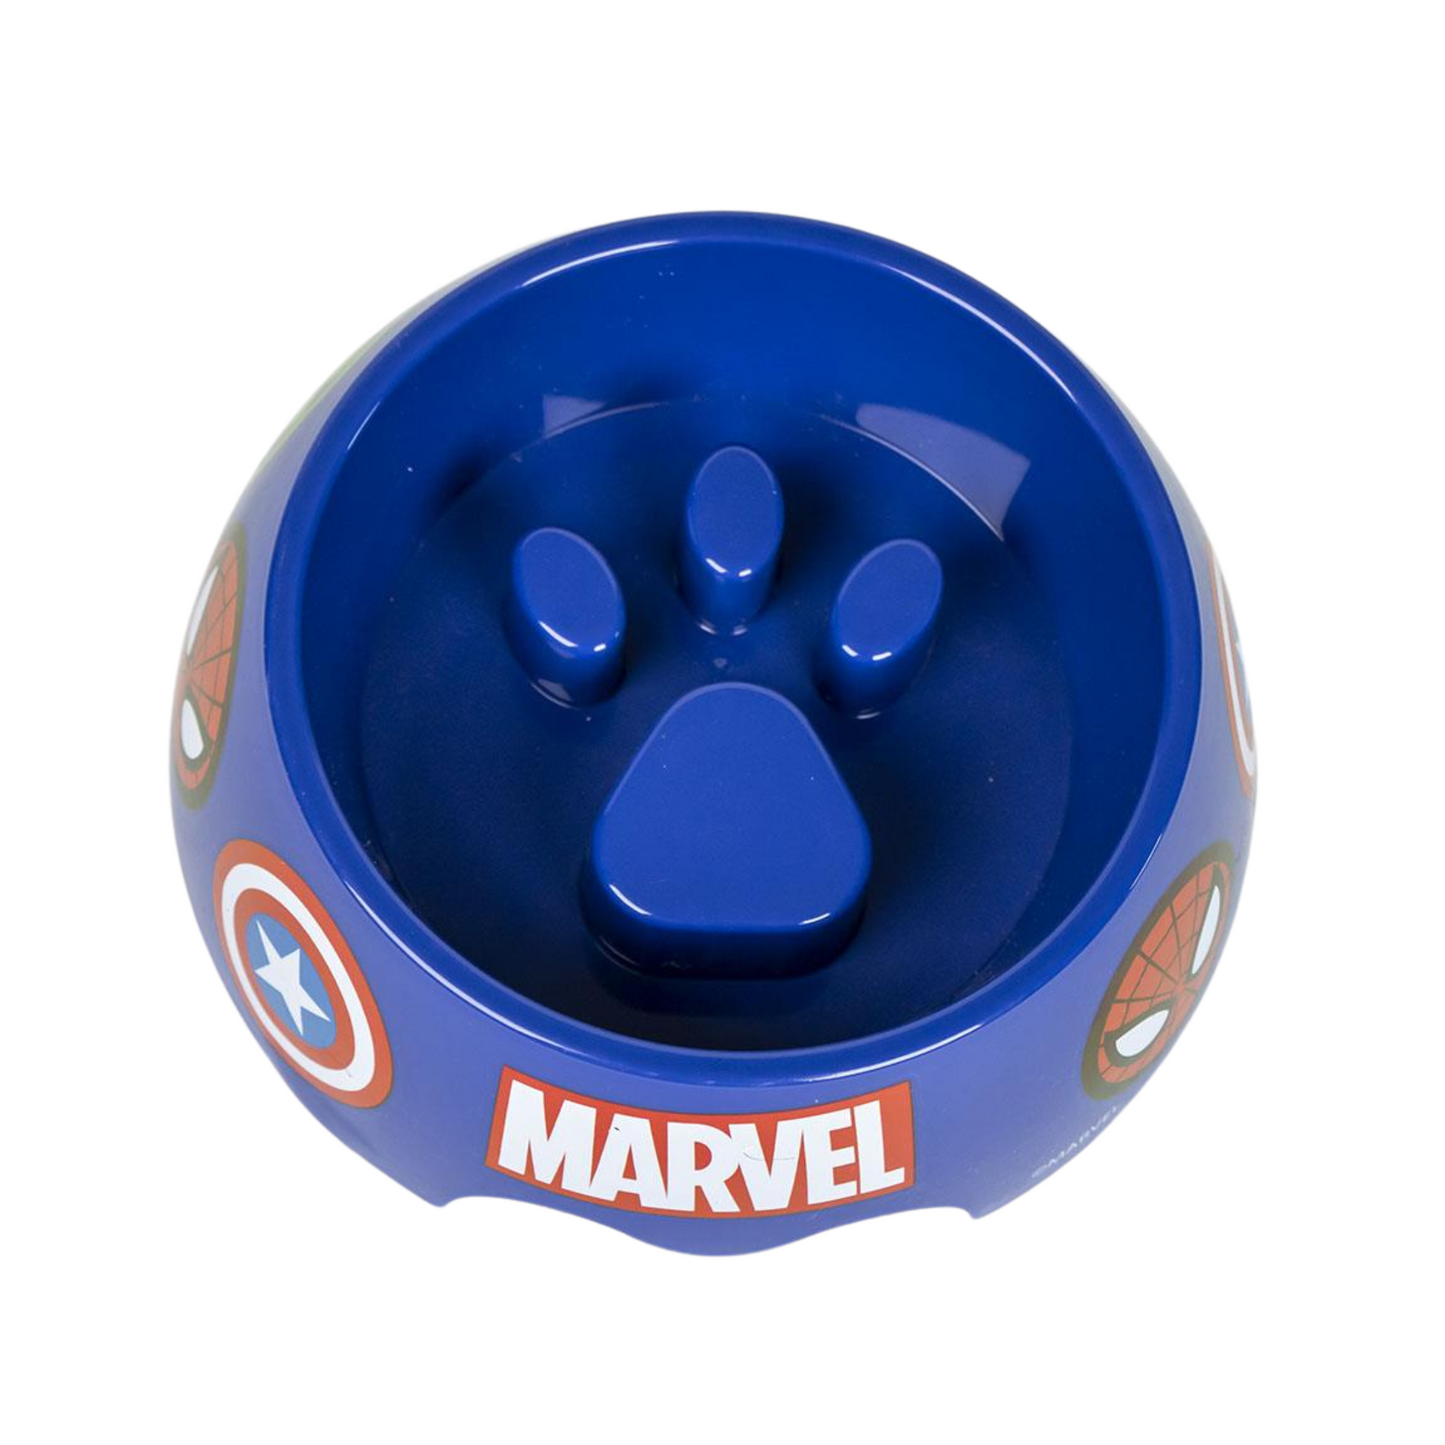 Marvel Avengers Gift Set For Dogs